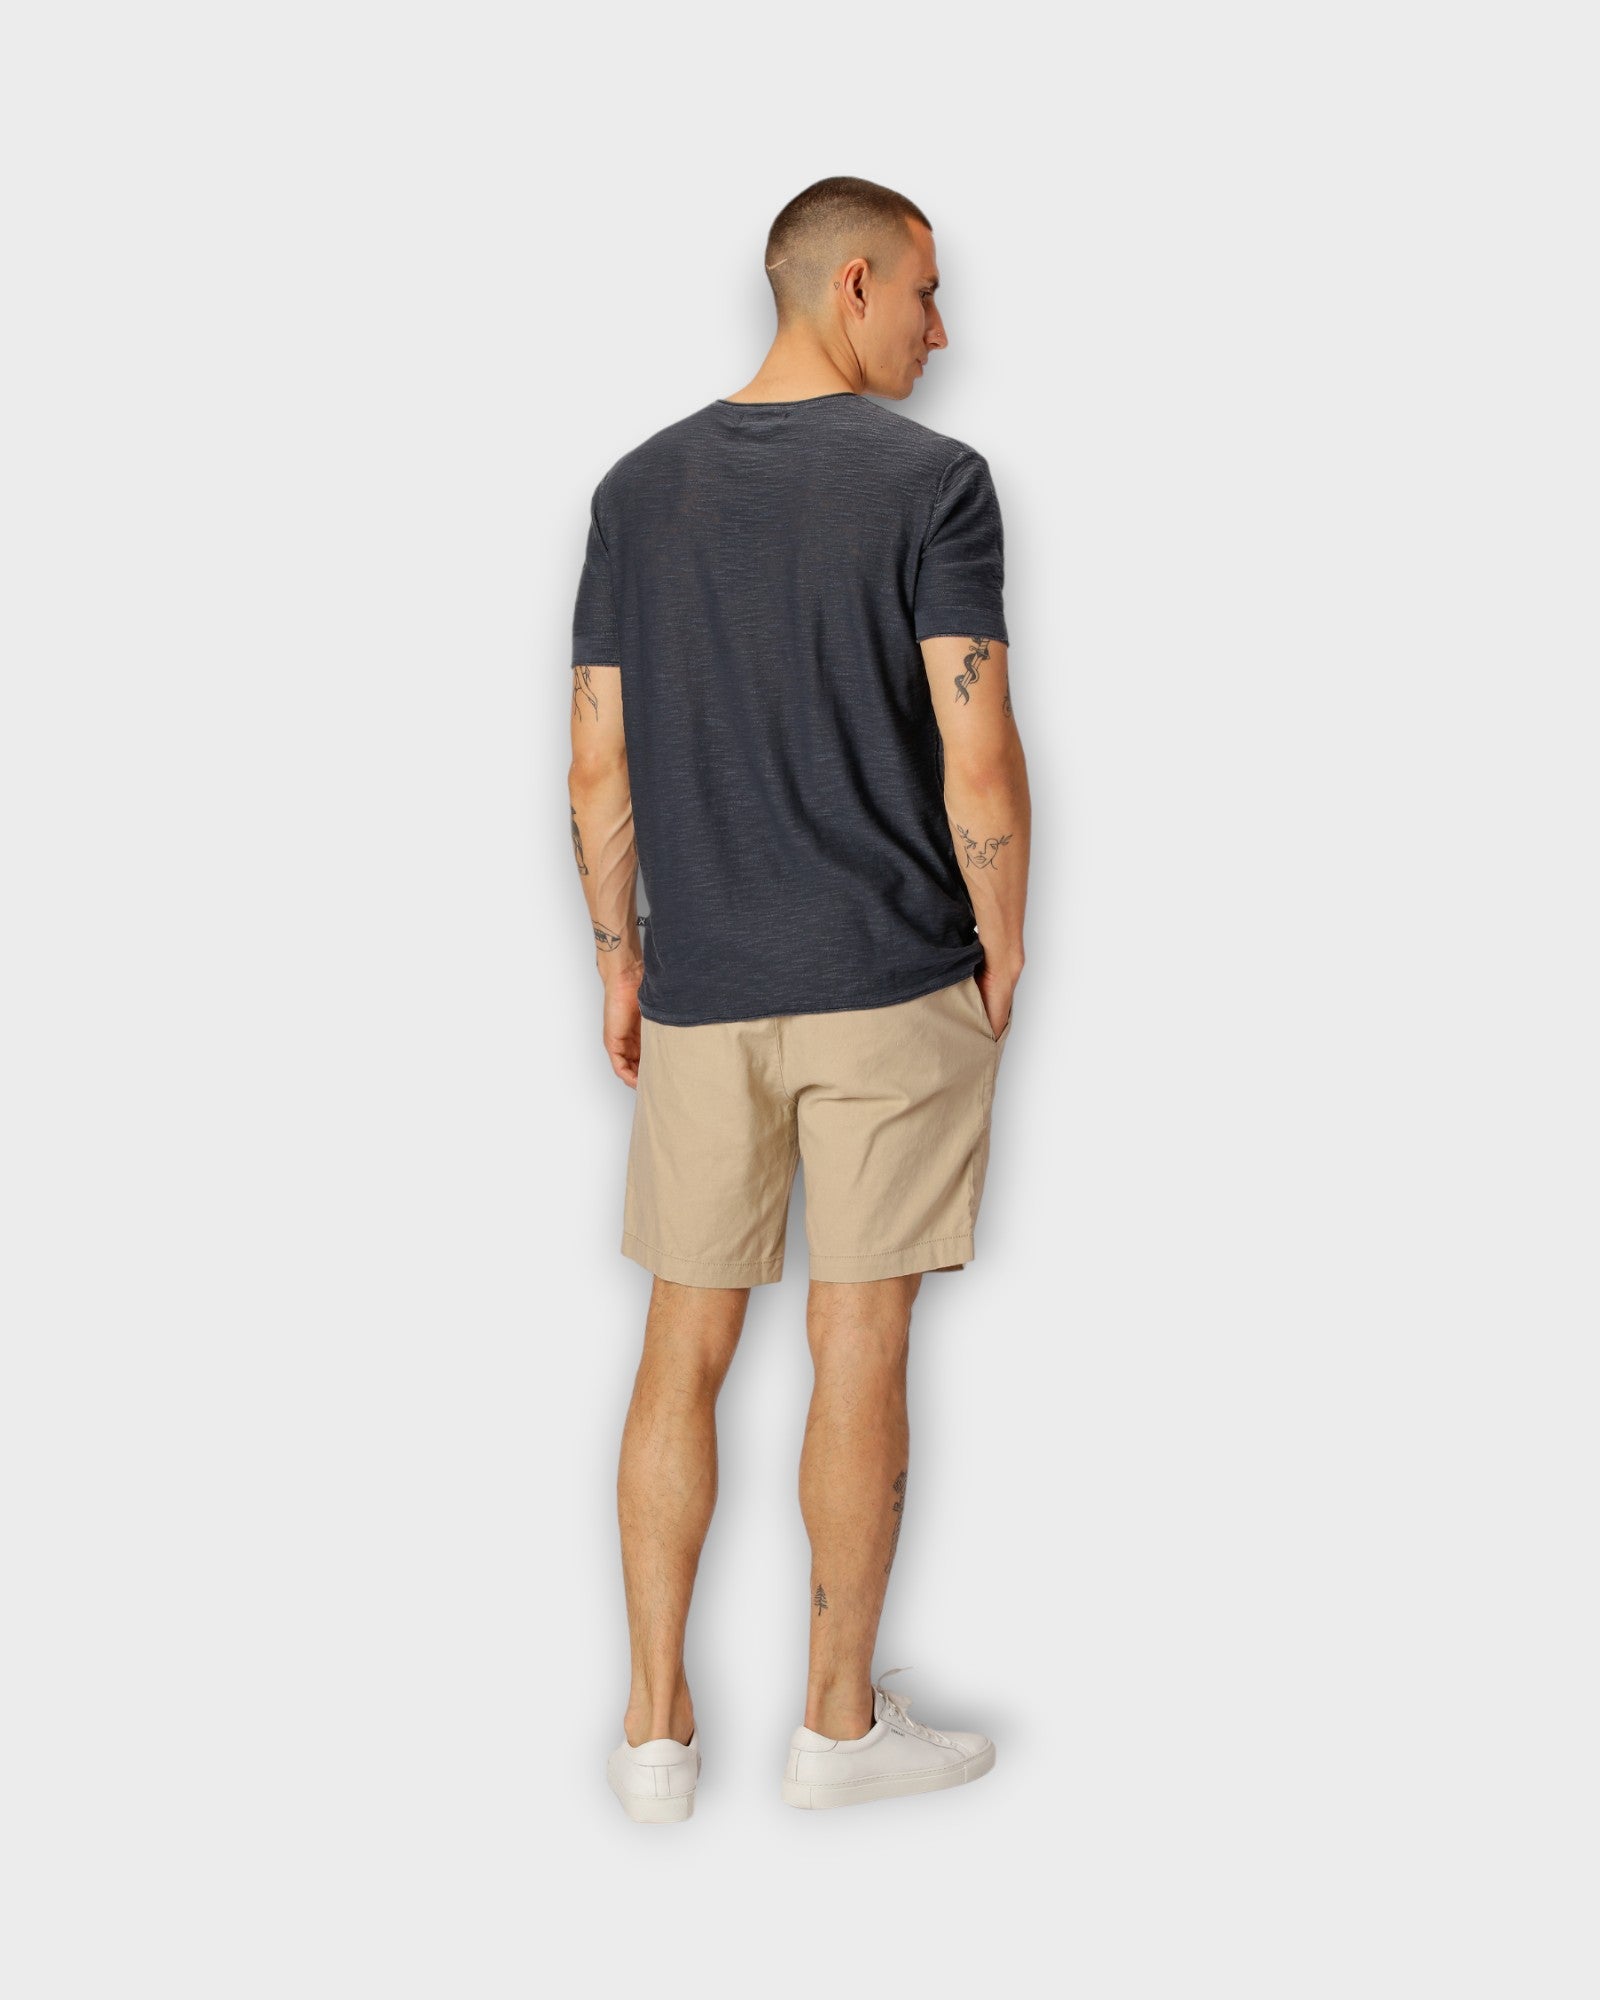 CC1860 Barcelona Cotton Linen Shorts Khaki. Sandfarvet hørshorts til mænd fra Clean Cut Copenhagen. Her set  på model bagfra.